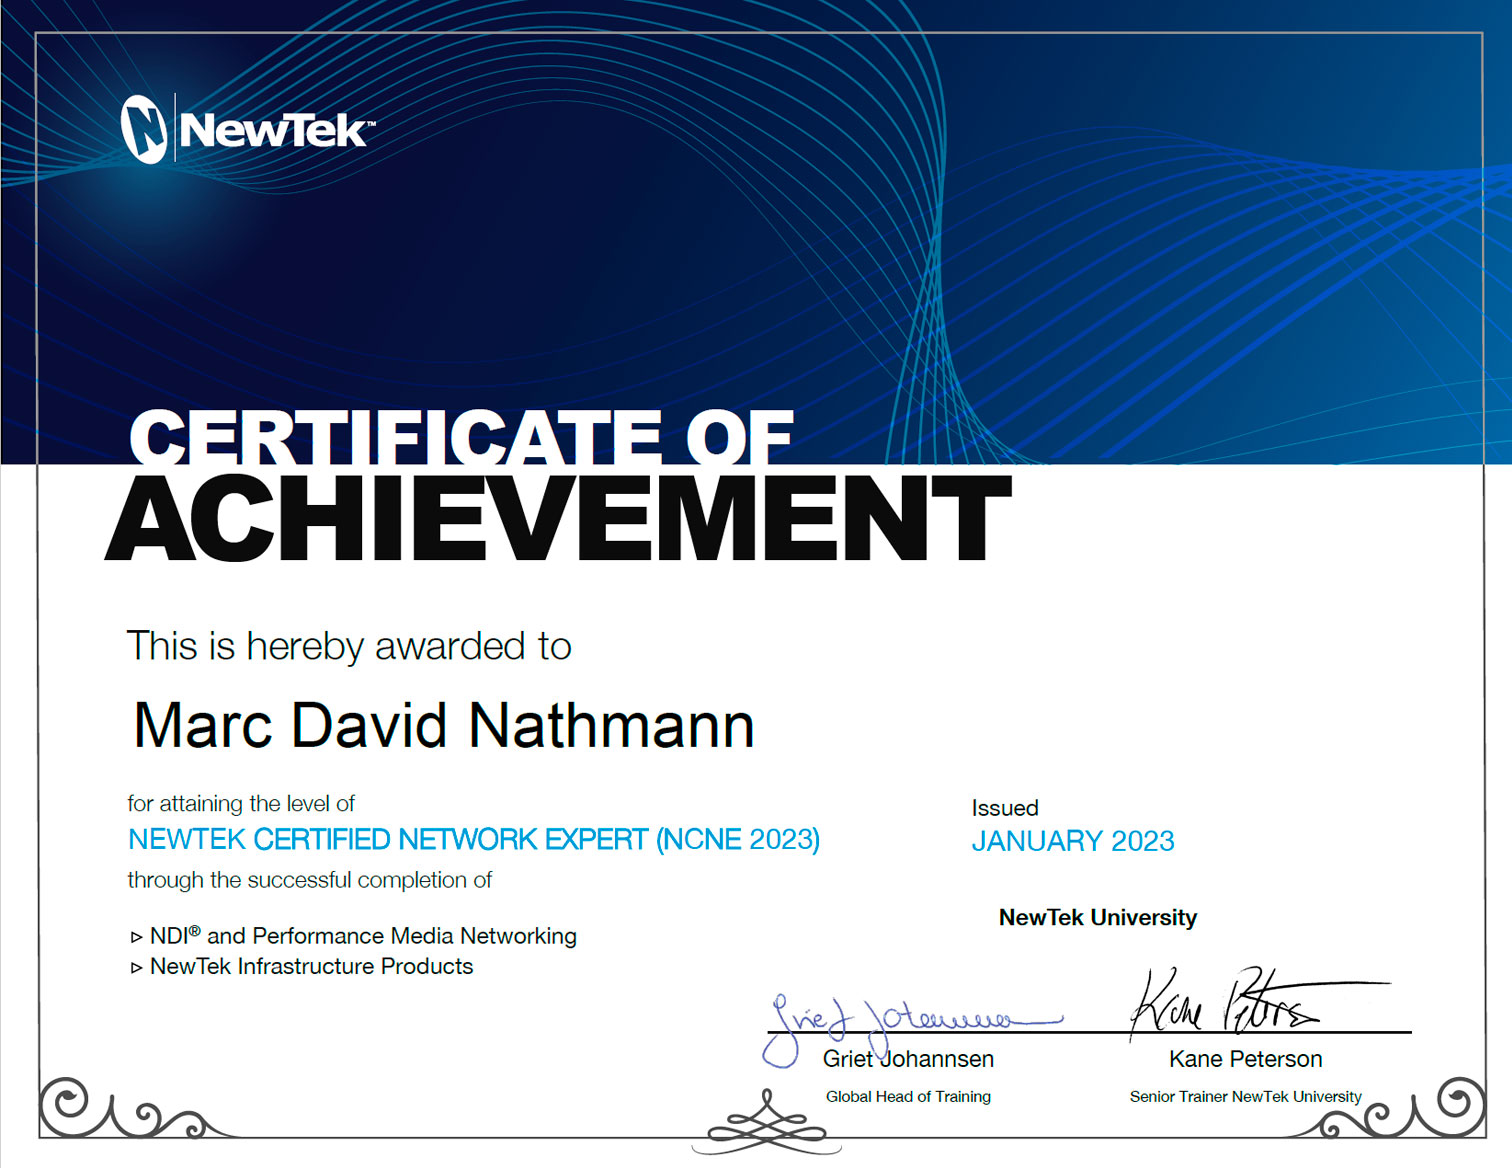 NewTek Certified Network Expert